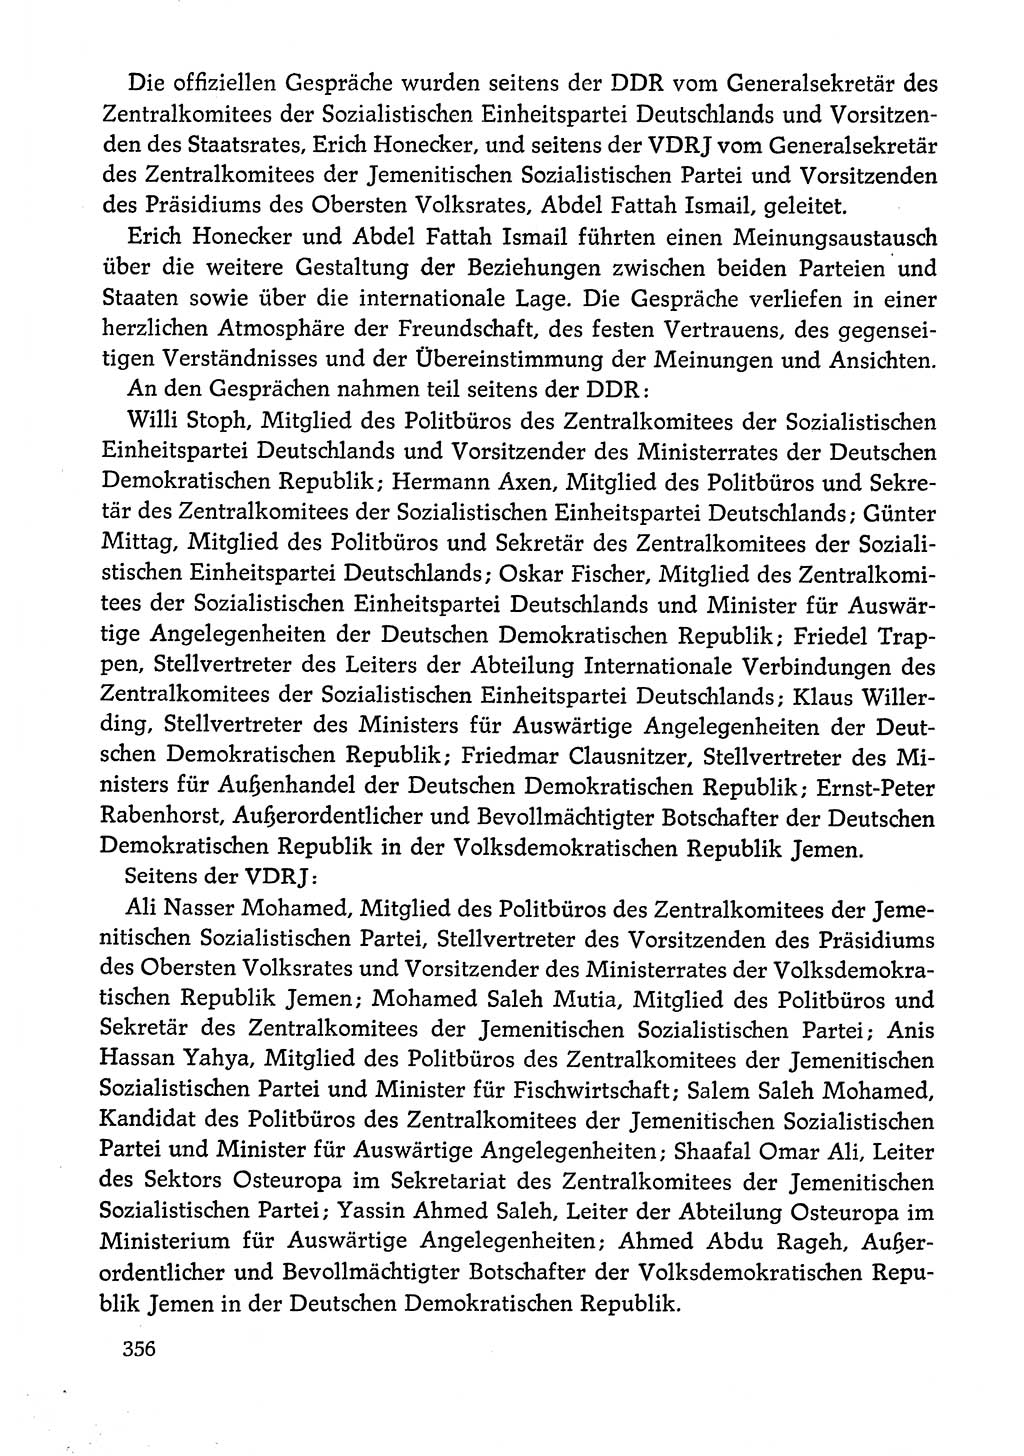 Dokumente der Sozialistischen Einheitspartei Deutschlands (SED) [Deutsche Demokratische Republik (DDR)] 1978-1979, Seite 356 (Dok. SED DDR 1978-1979, S. 356)